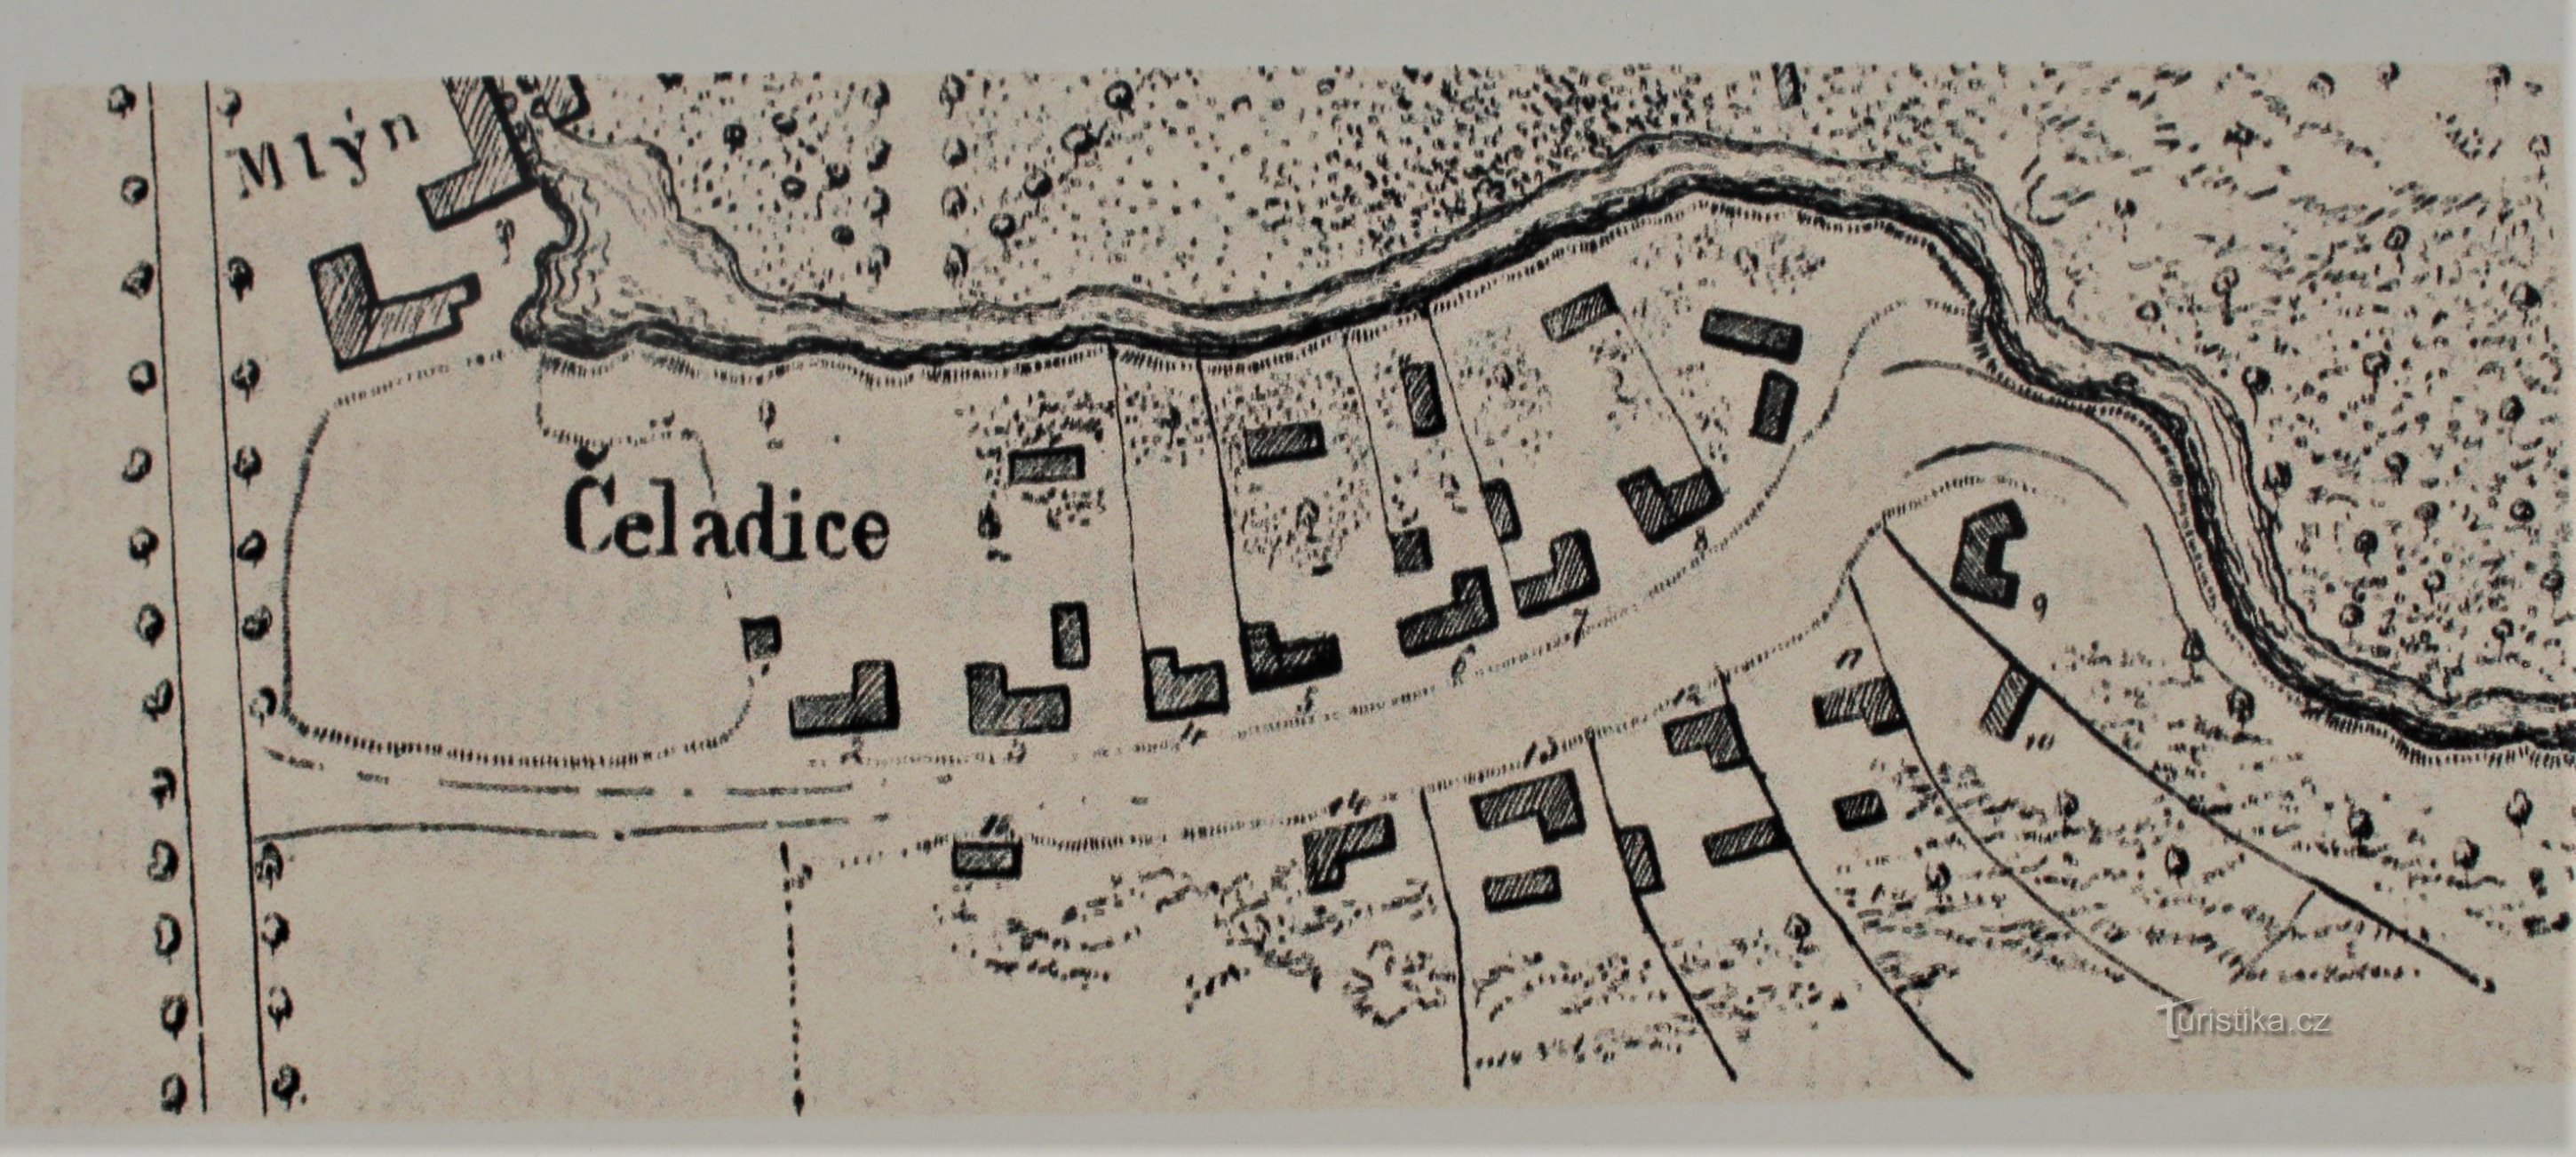 Harta Čeladice din 1774 (luată de pe panoul informativ)